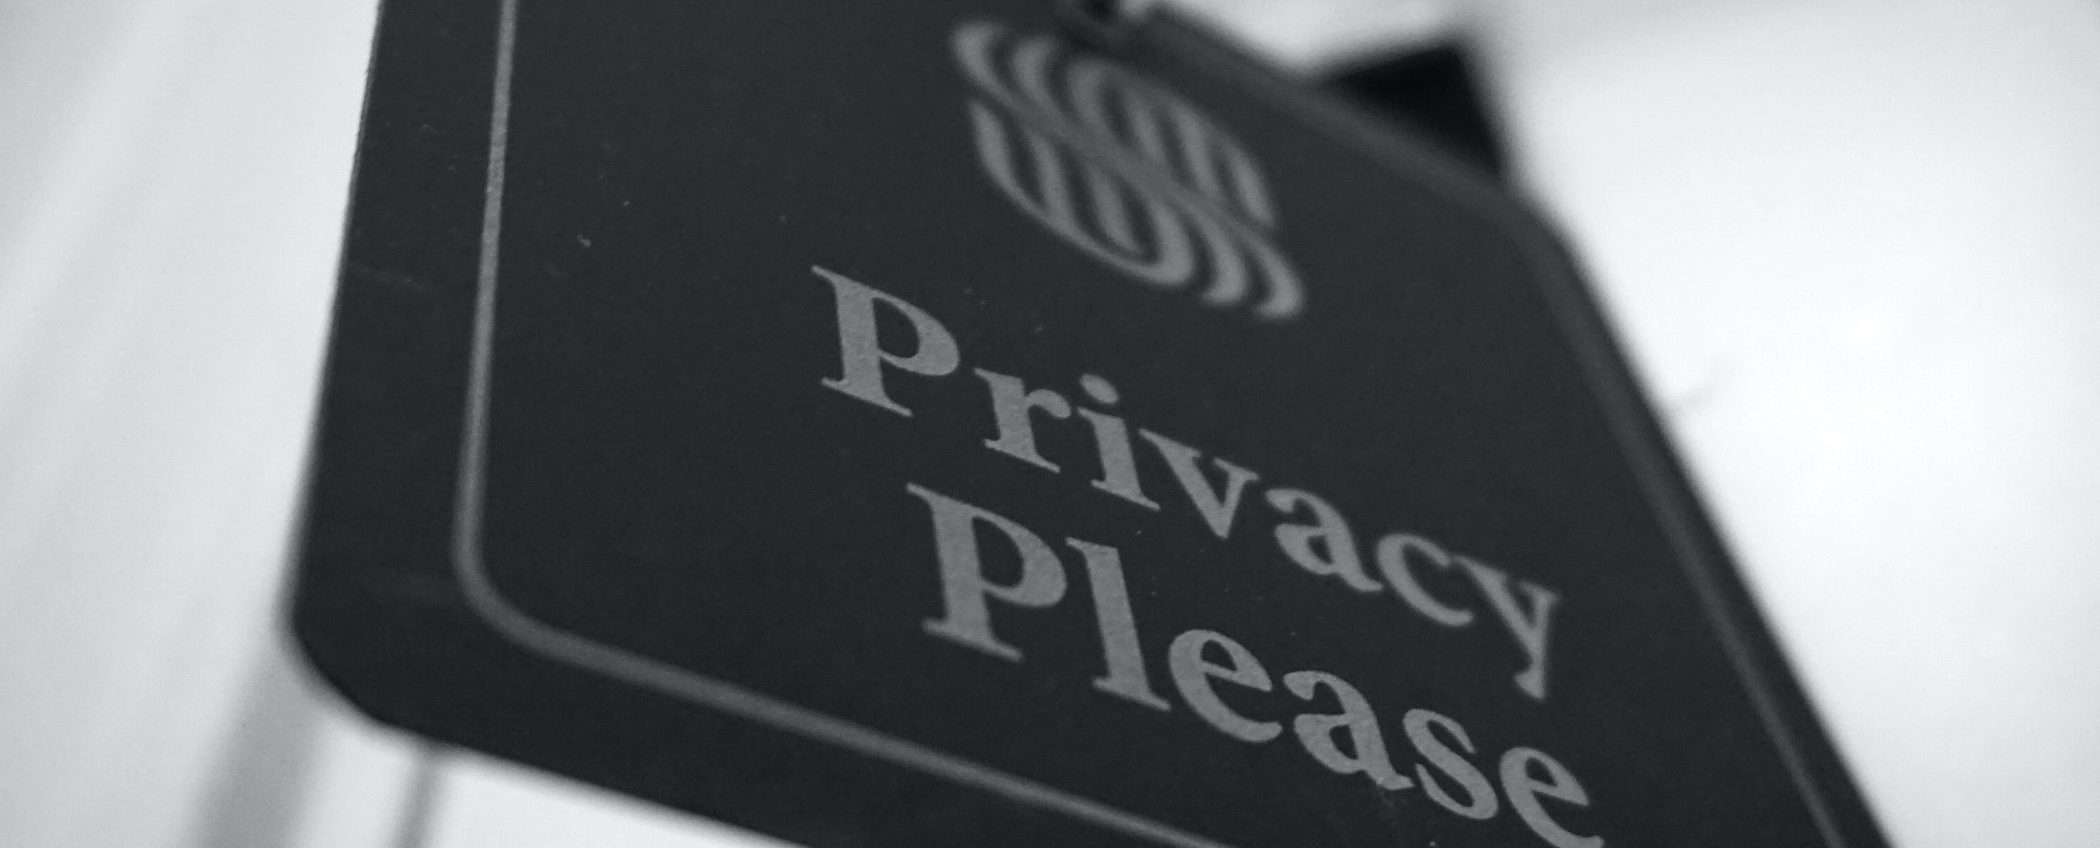 Nuova VPN? con QUESTA PROMO servono 1,61€/mese per PRIVACY al TOP